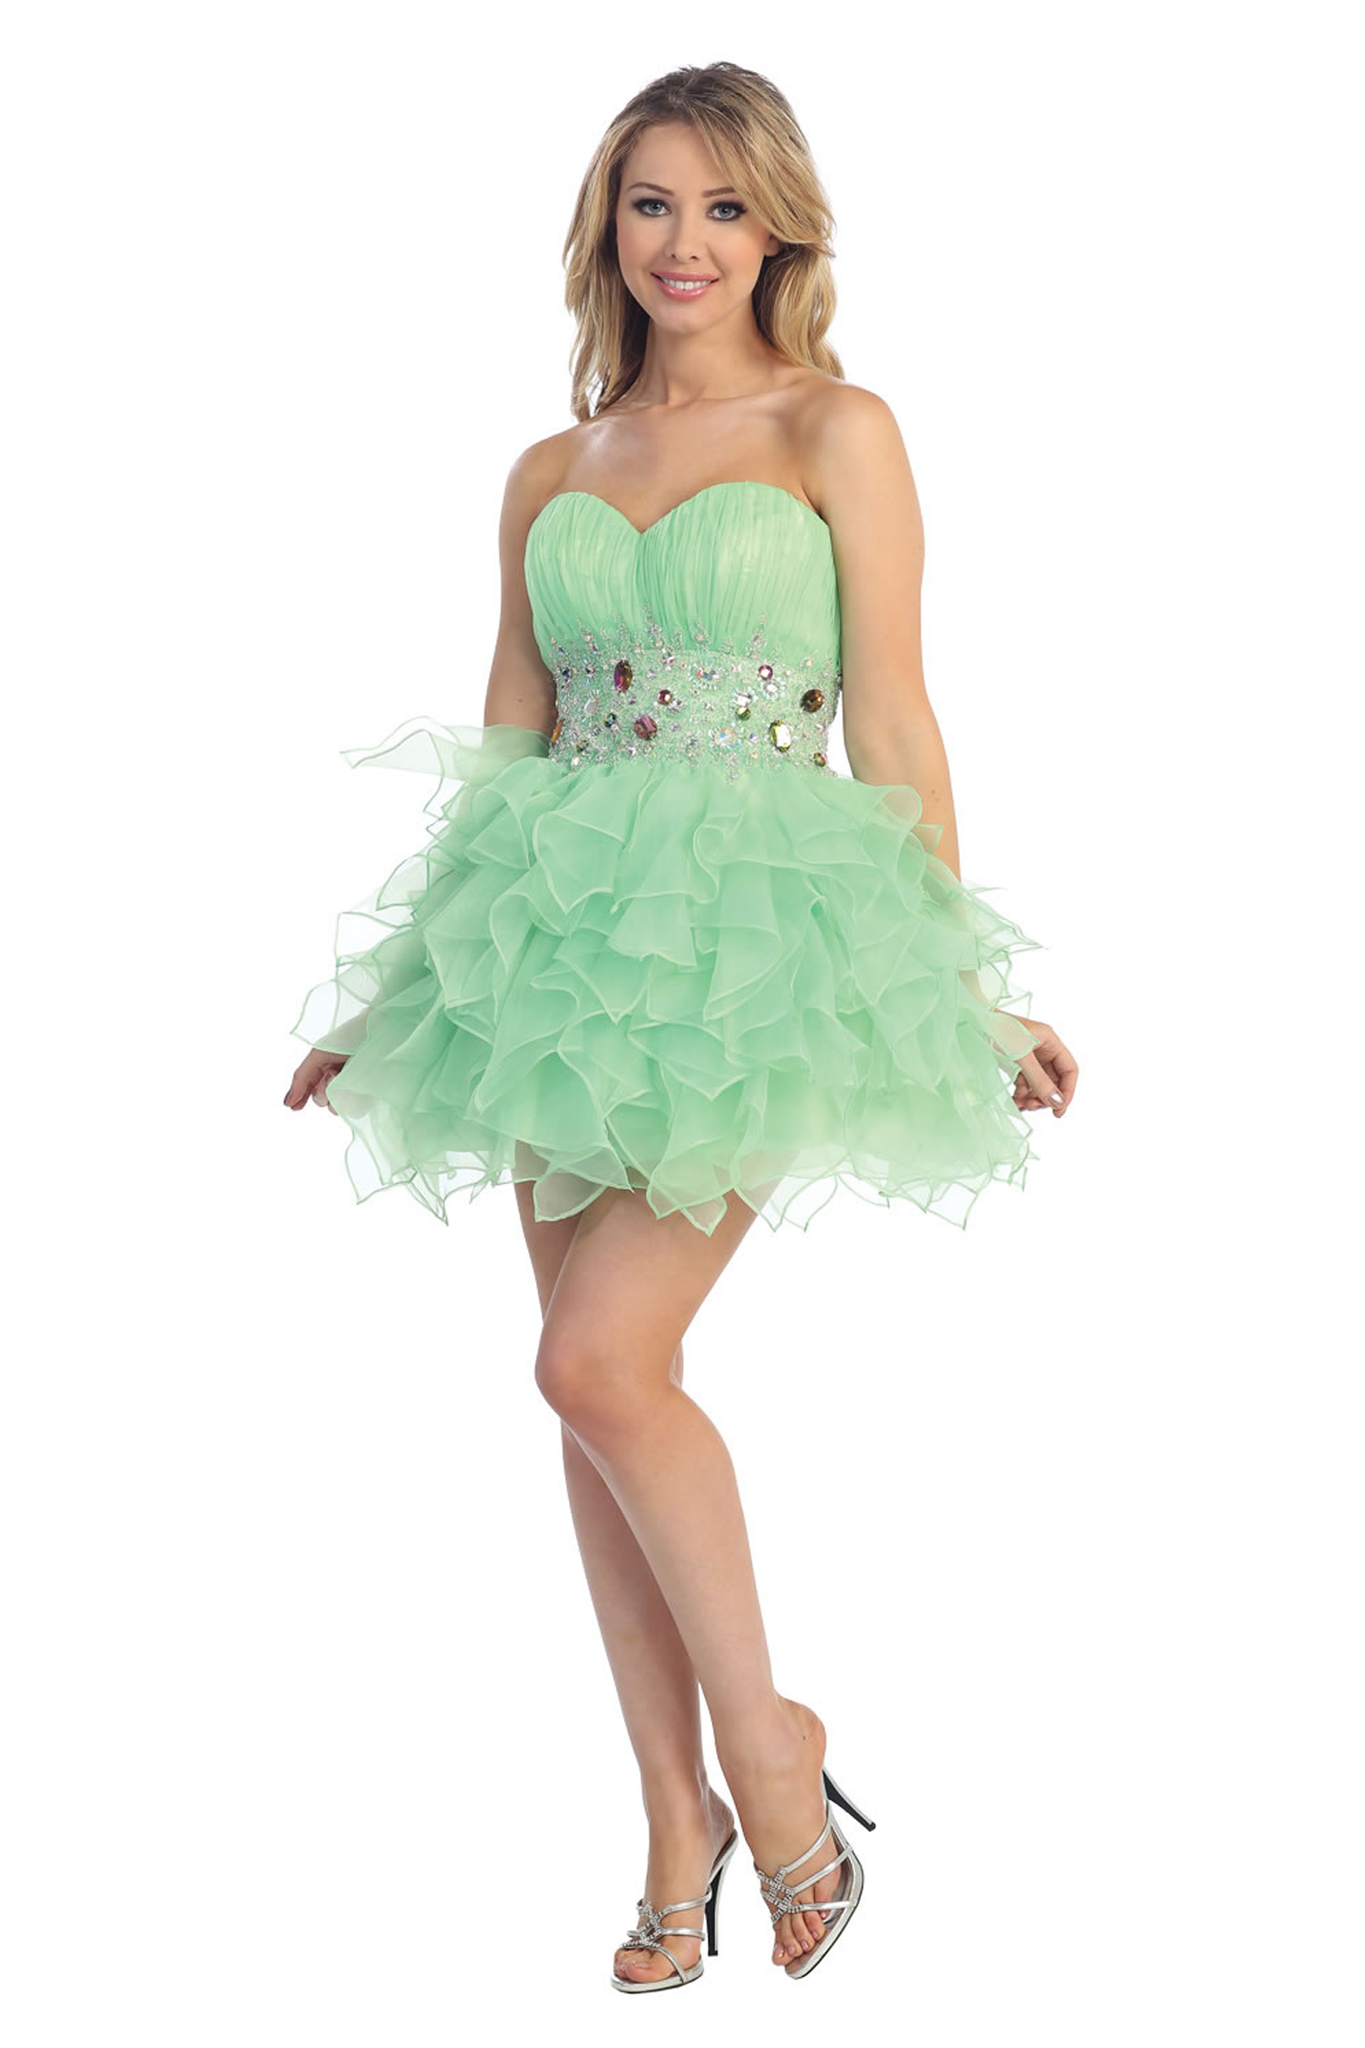 Fabulous Short Sexy Flirty Fun Strapless Prom Homecoming Detail Midriff Dress Ebay 6233